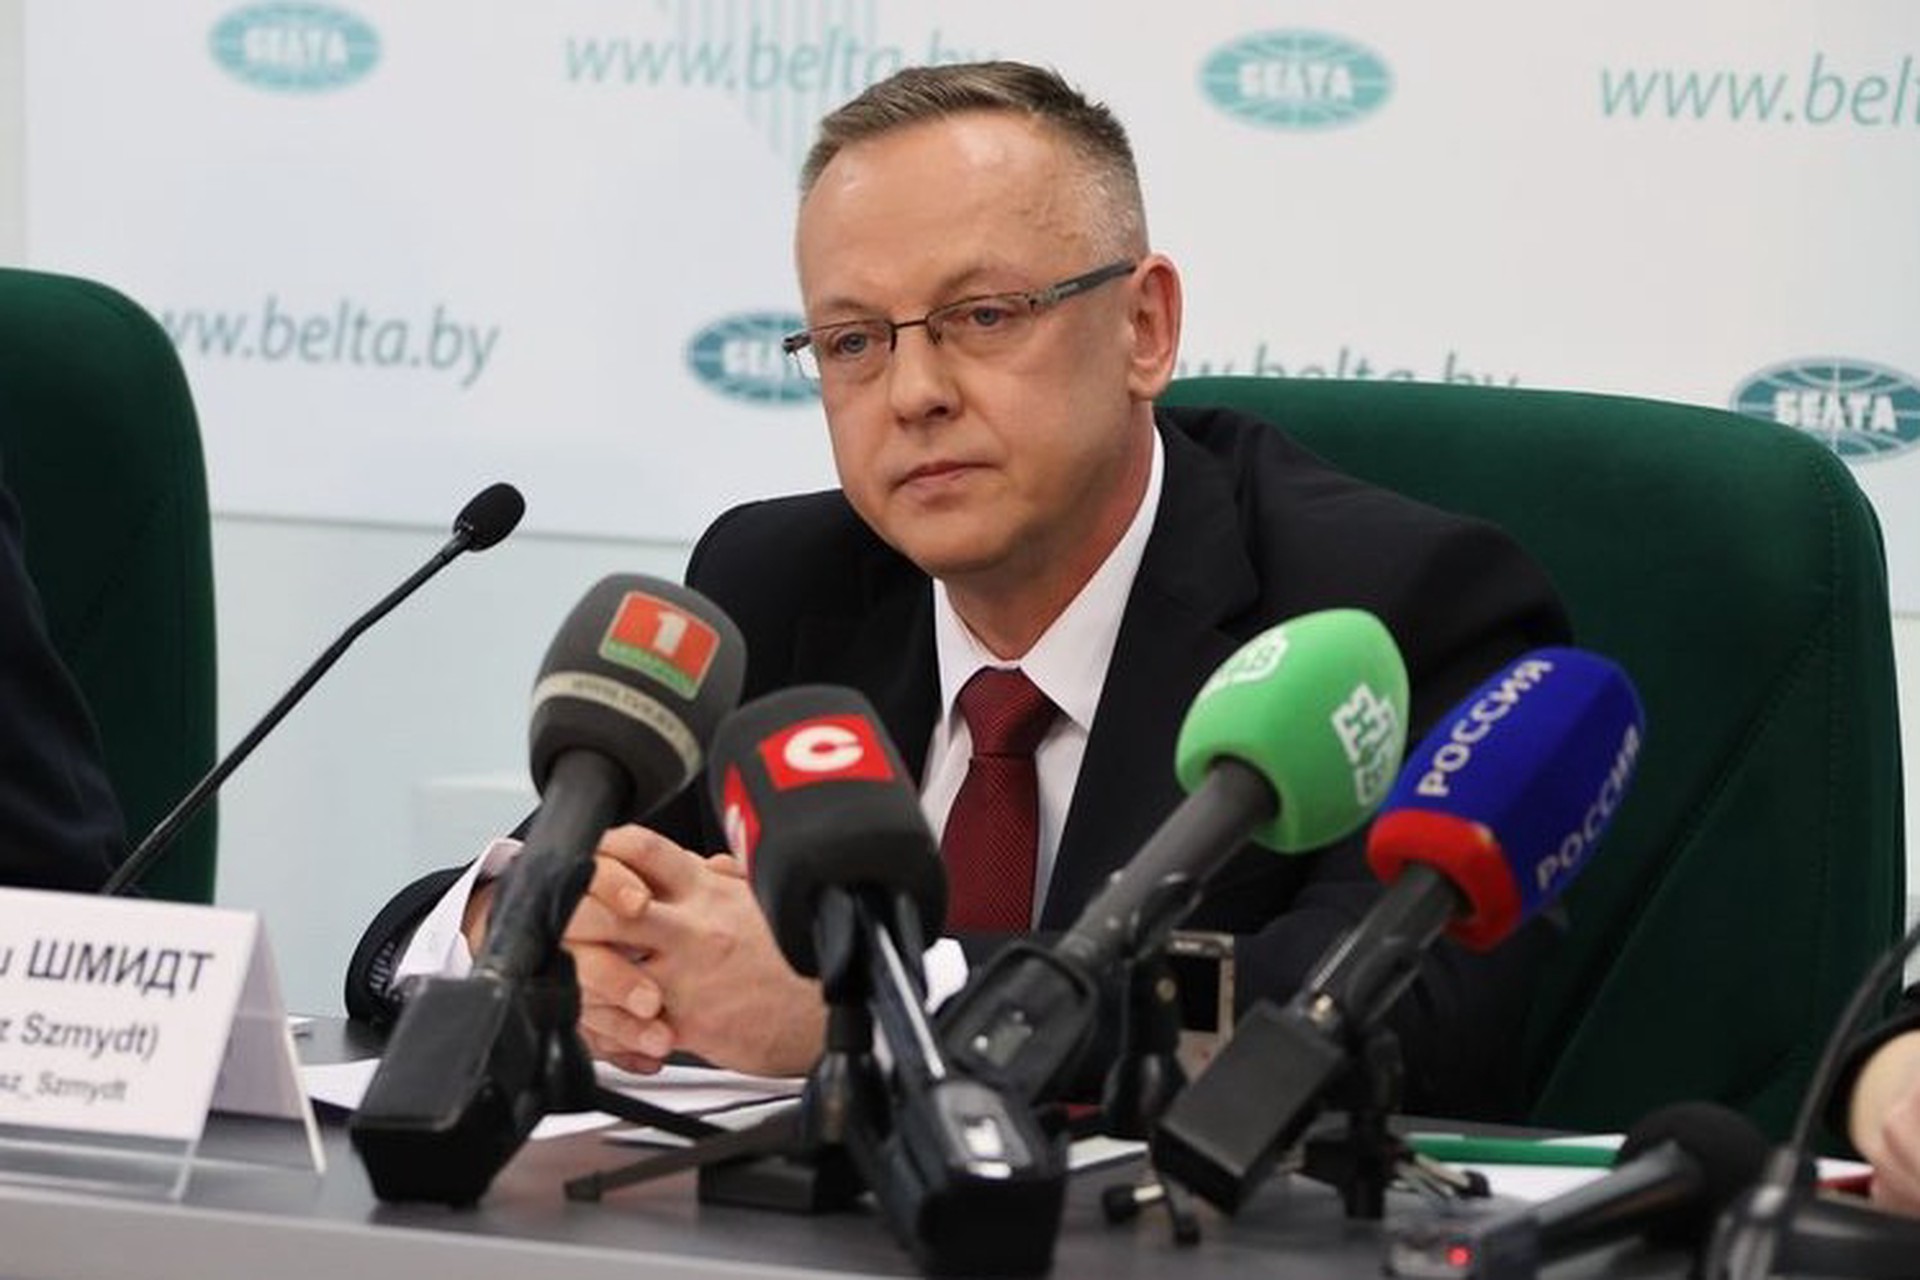 Бывший польский судья Шмидт заявил о подготовке международного ордера на его арест